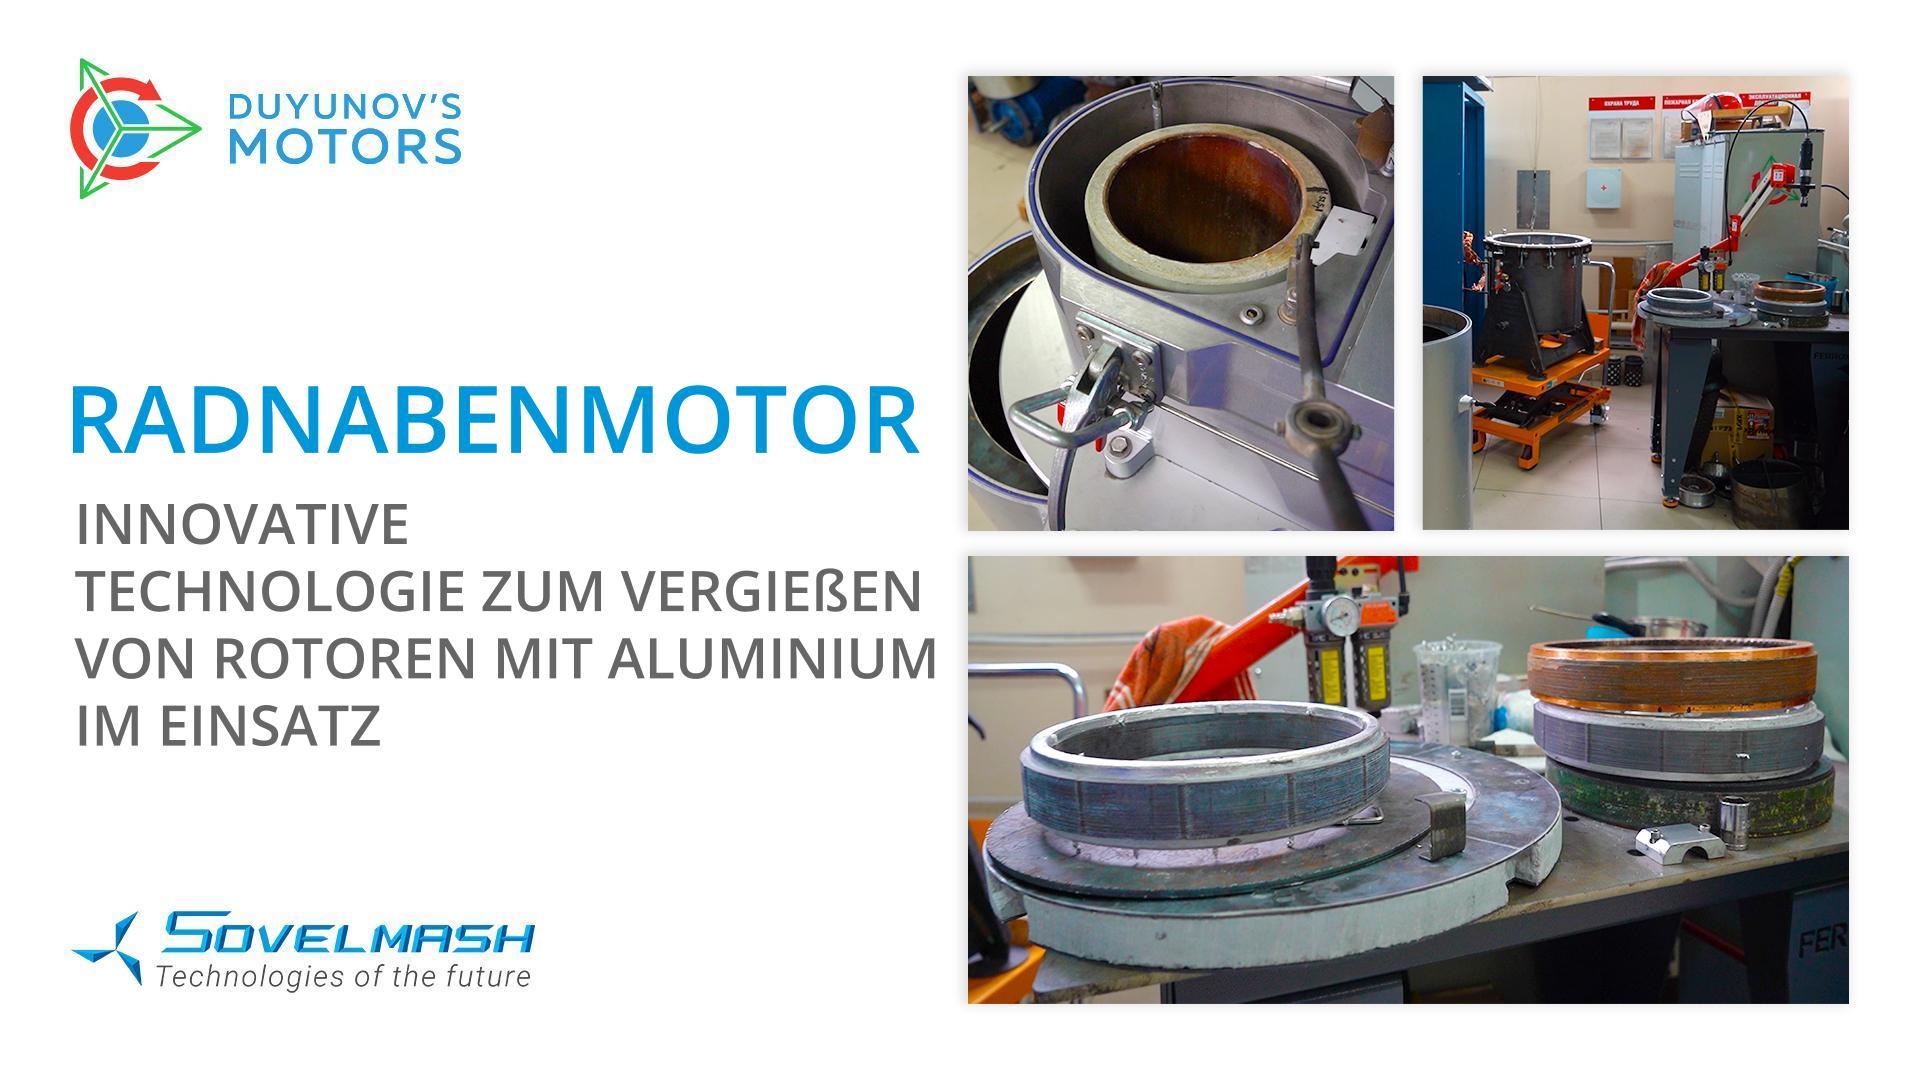 Radnabenmotor: Innovative Technologie zum Vergießen von Rotoren mit Aluminium im Einsatz